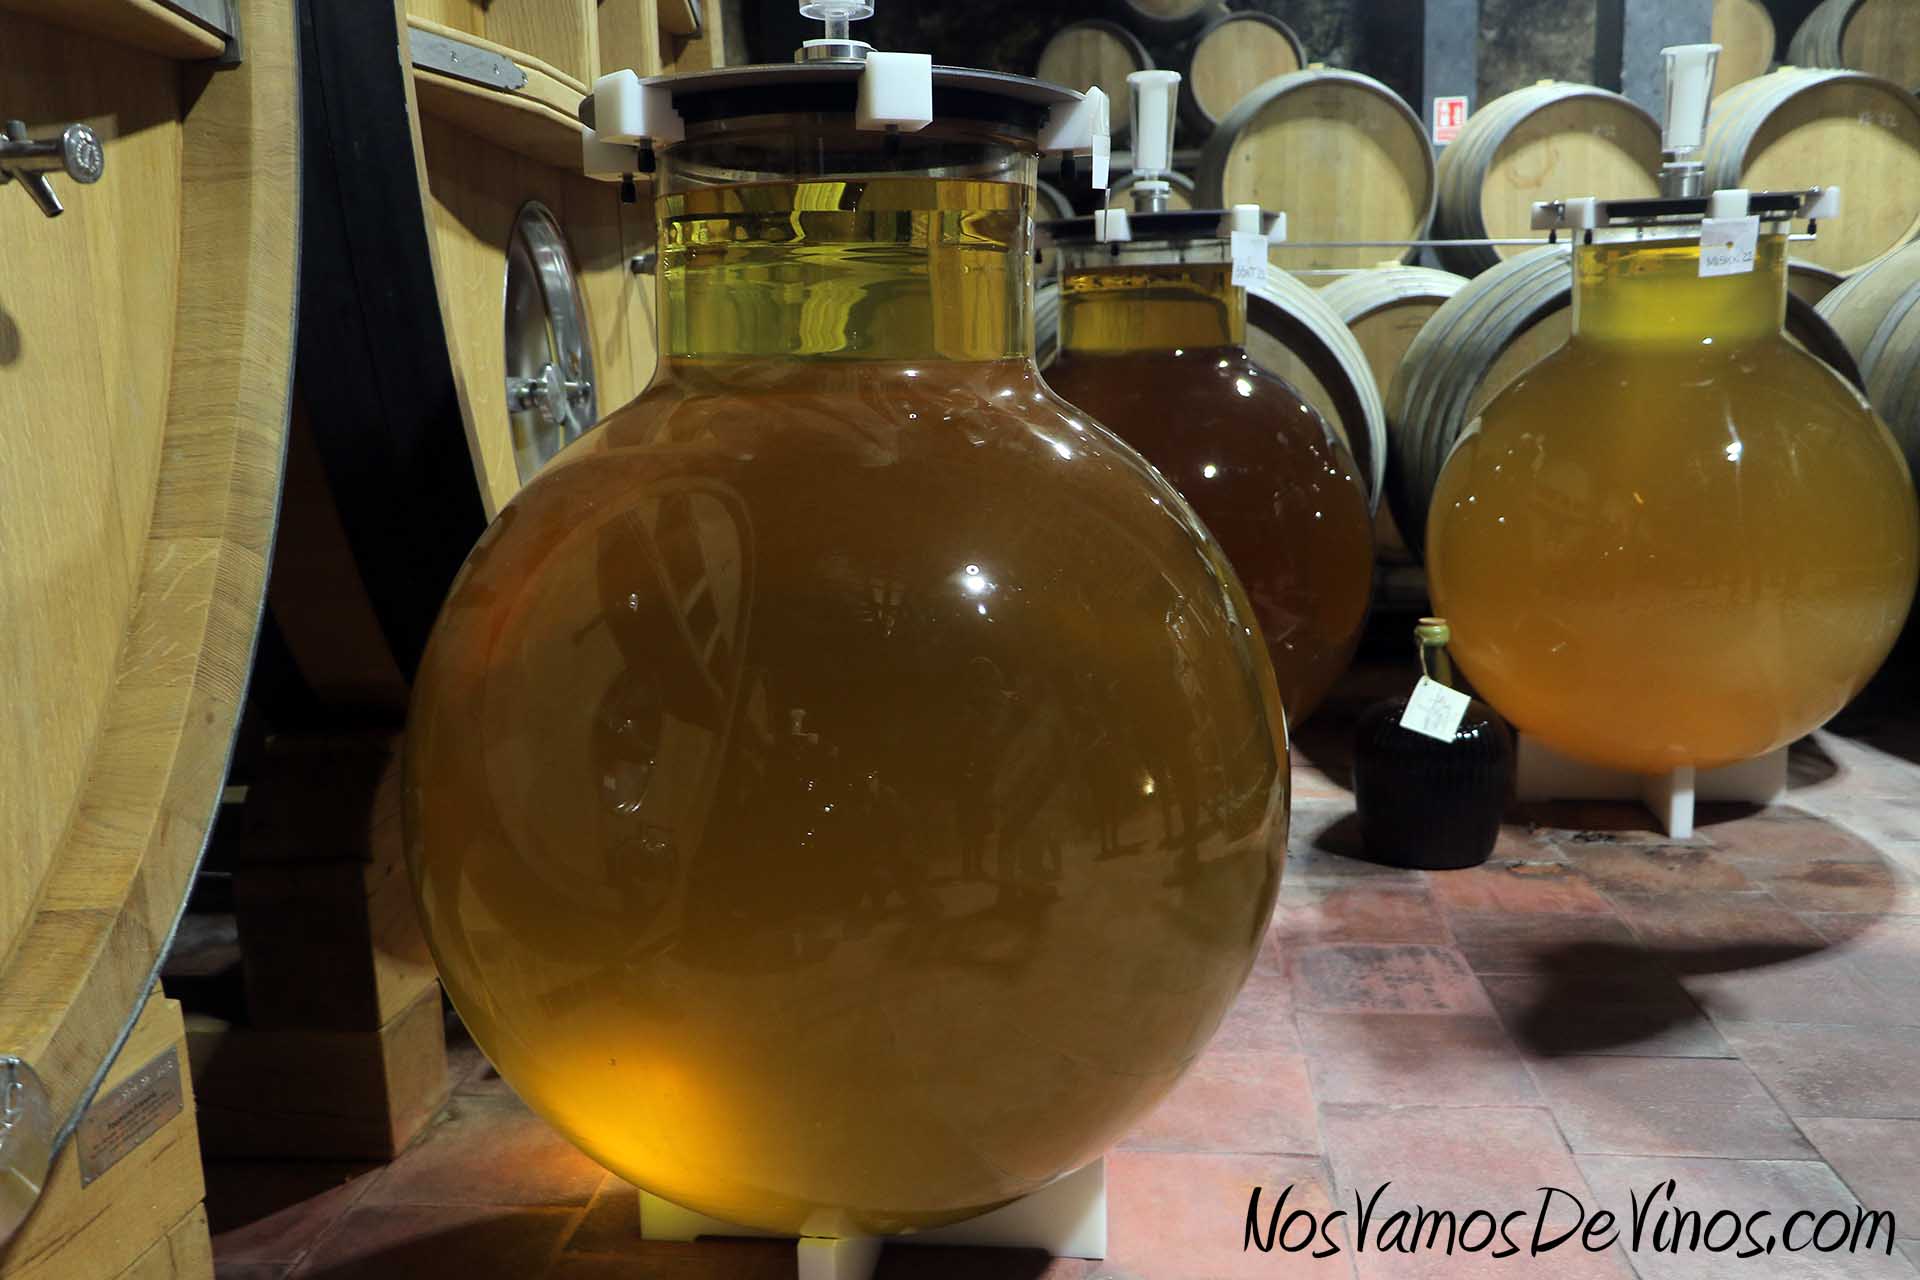 En Menade reservan parte del vino para hacer pruebas de crianza en diferentes recipientes que les ayuden a entender mejor la evolución de sus vinos.